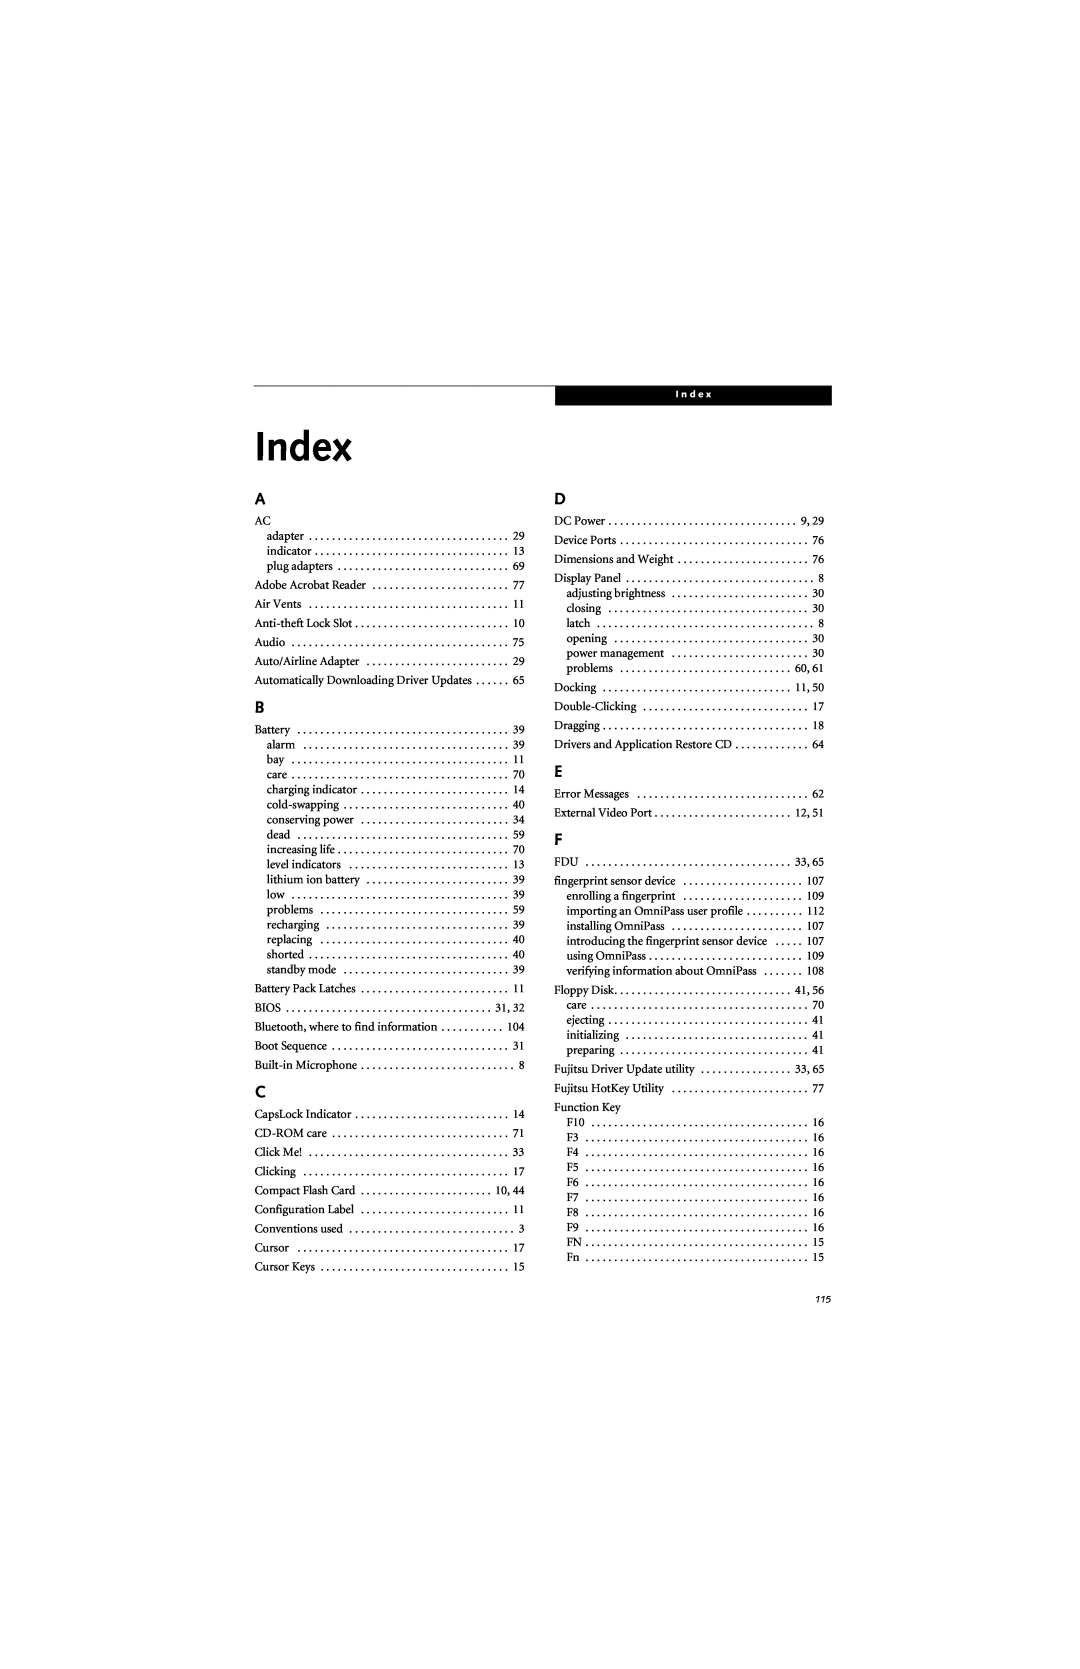 Fujitsu B6220 manual Index 